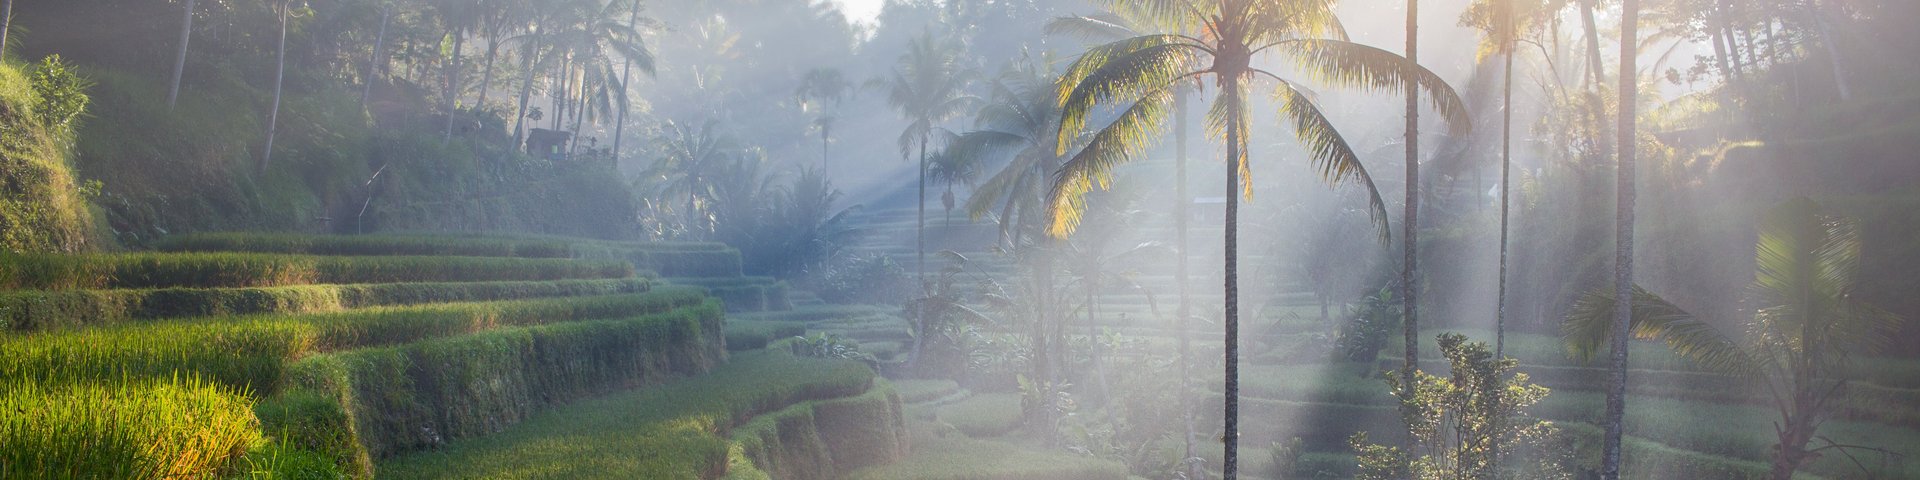 Reisfelder in Bali, Indonesien